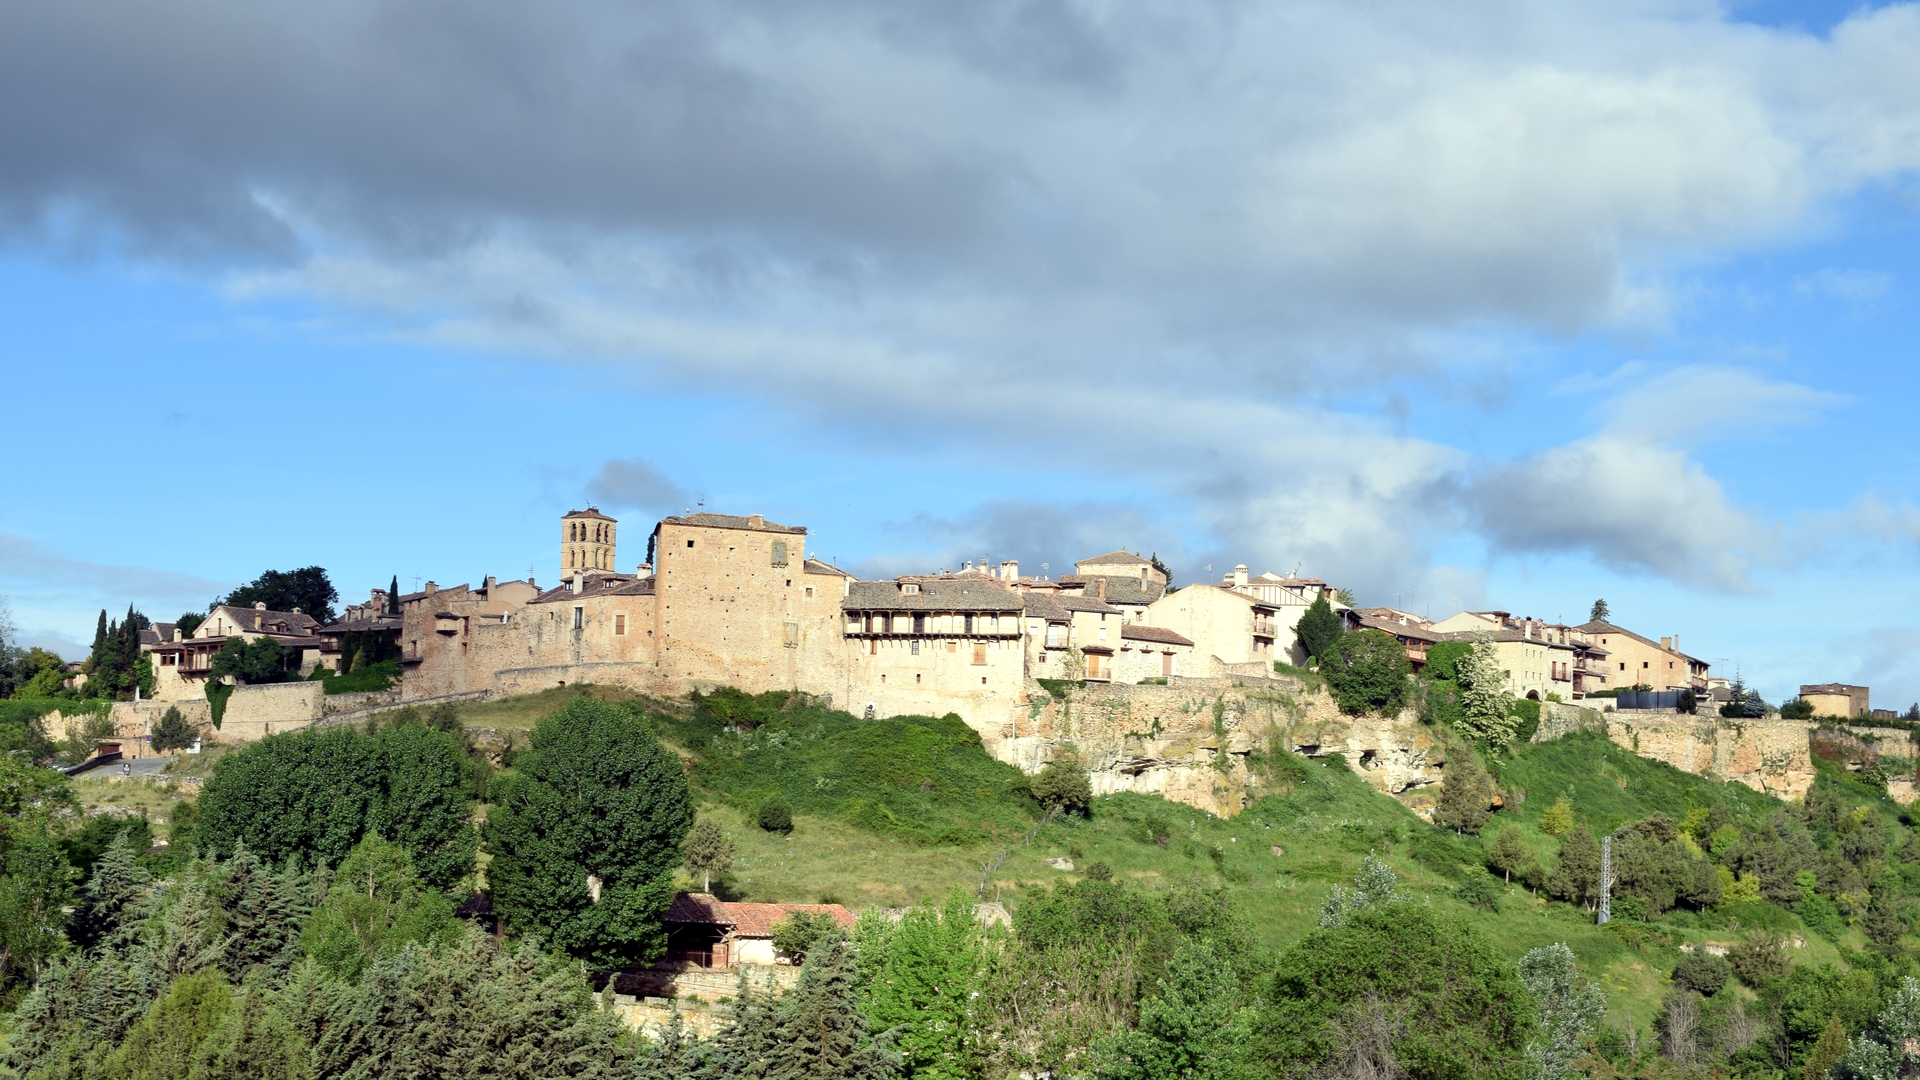 General 1920x1080 Pedraza Segovia Castilla y León Spain medieval village trees sky clouds building